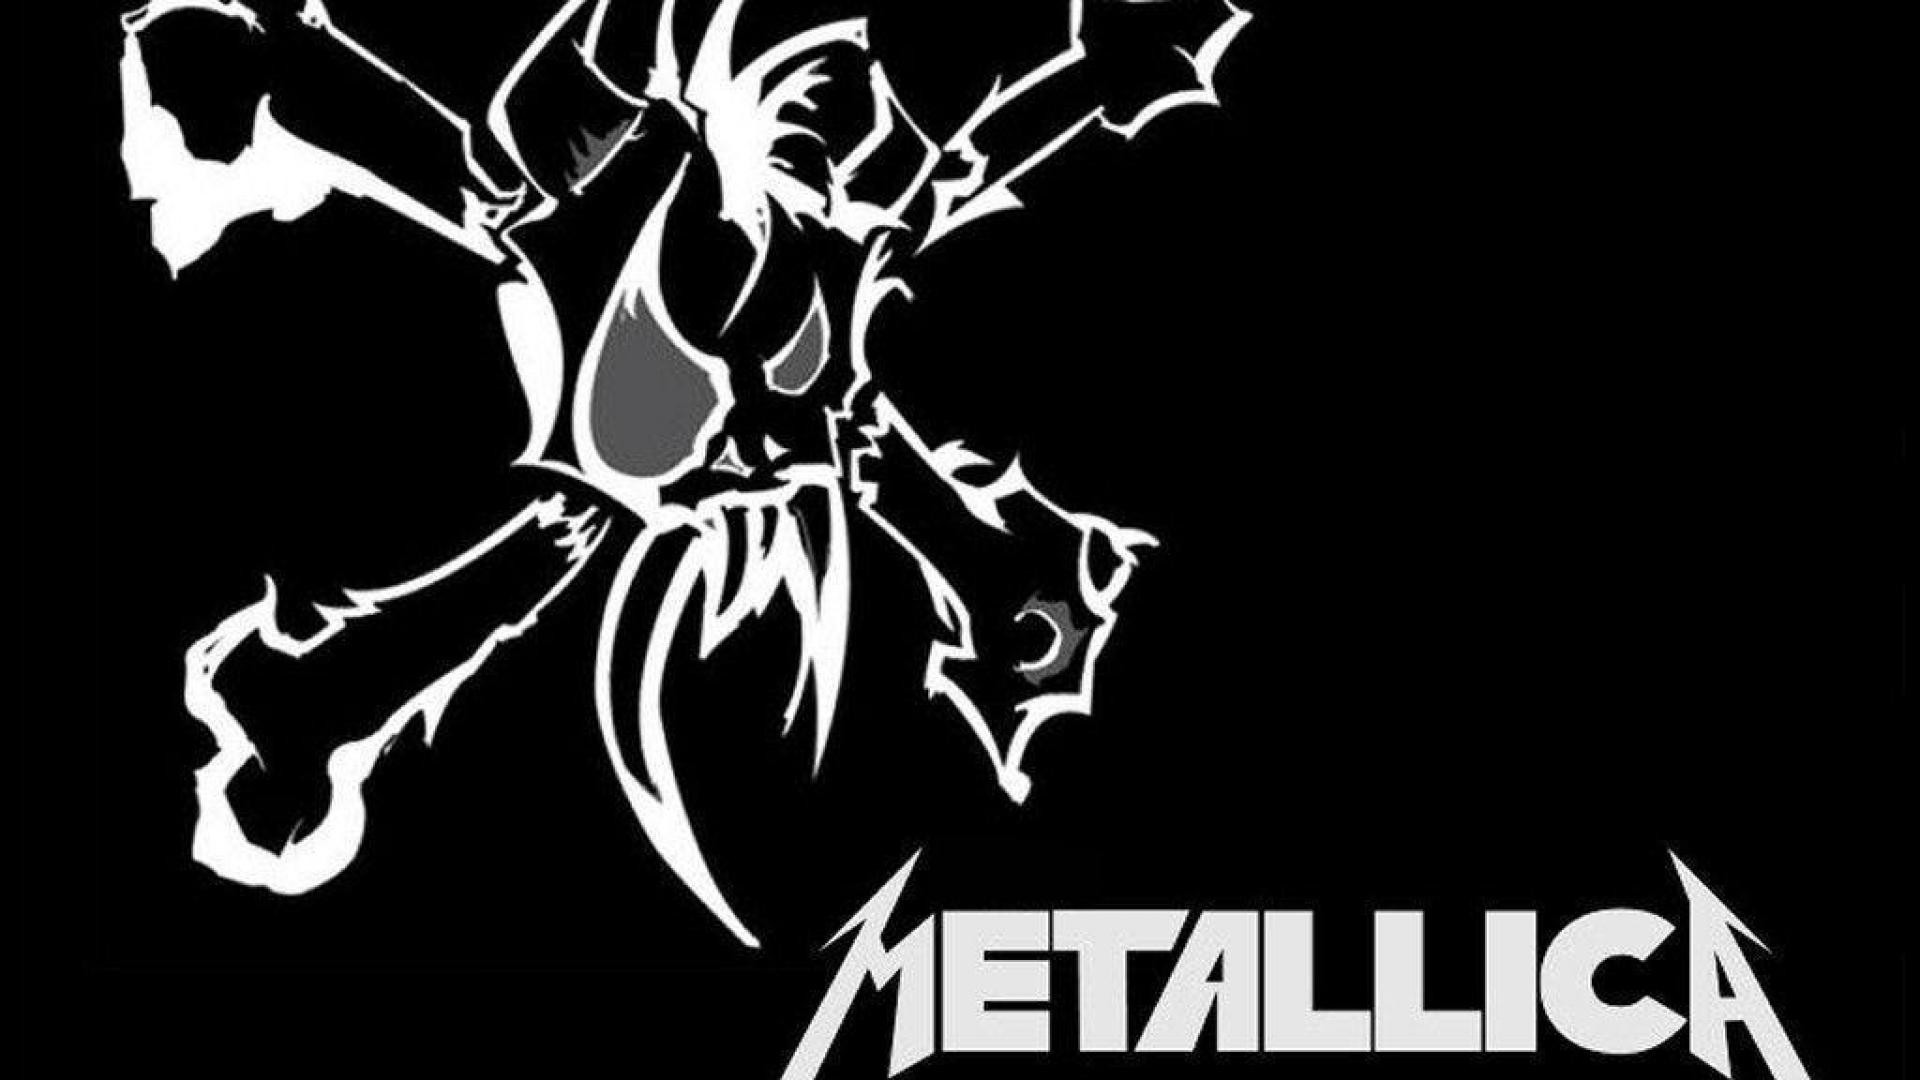 Metallica HD wallpapers  Pxfuel